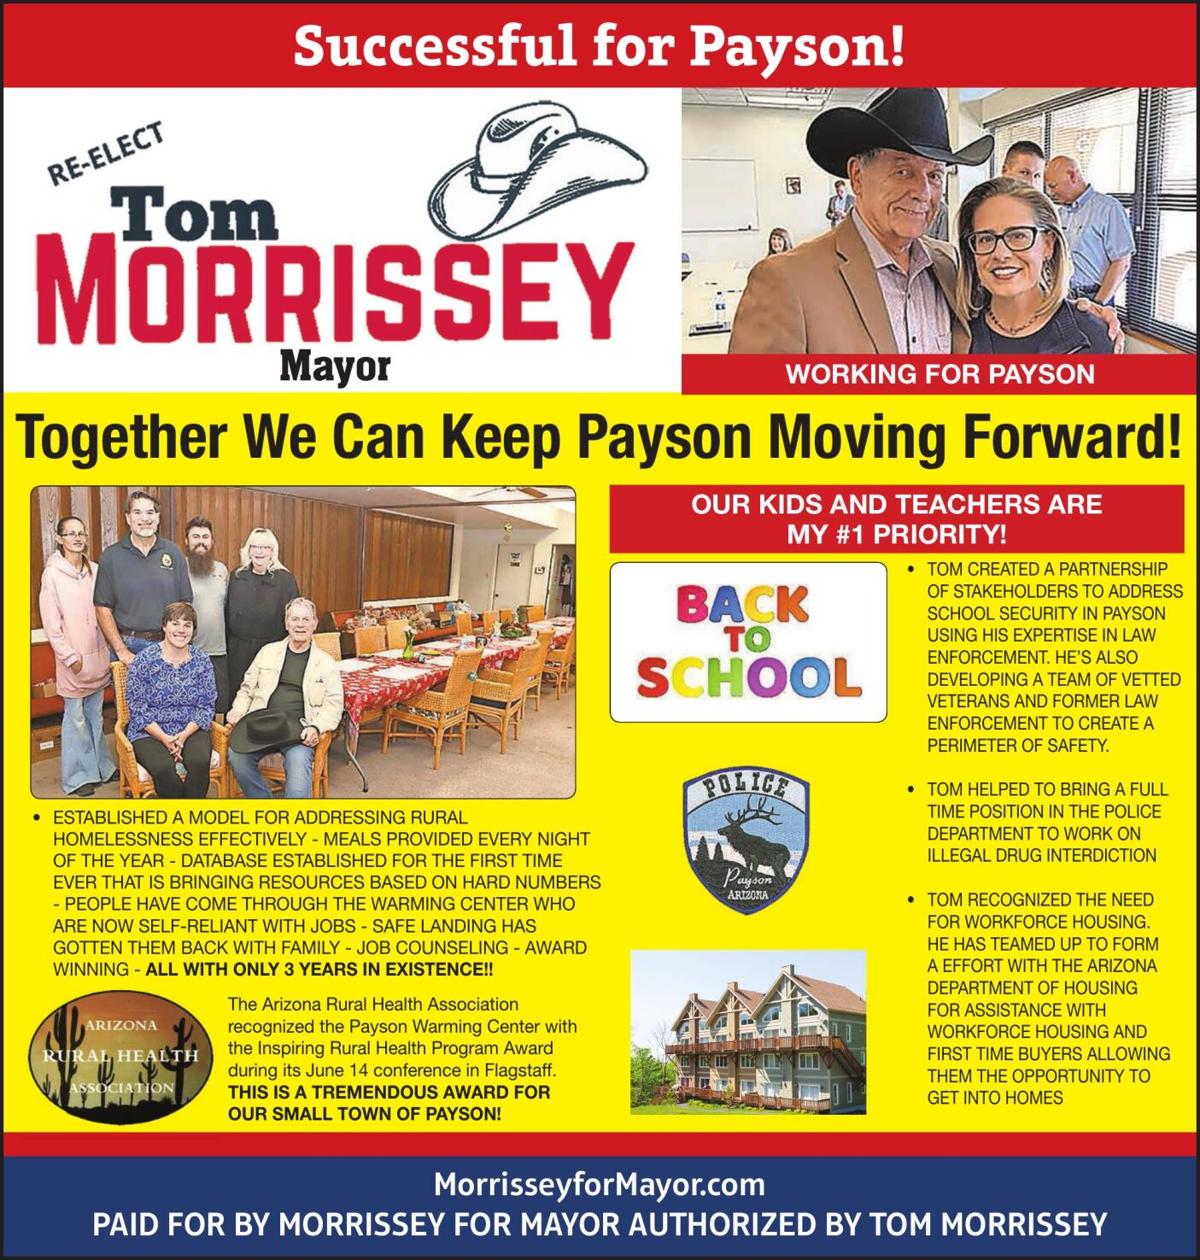 Re-Elect Tom Morrissey Mayor